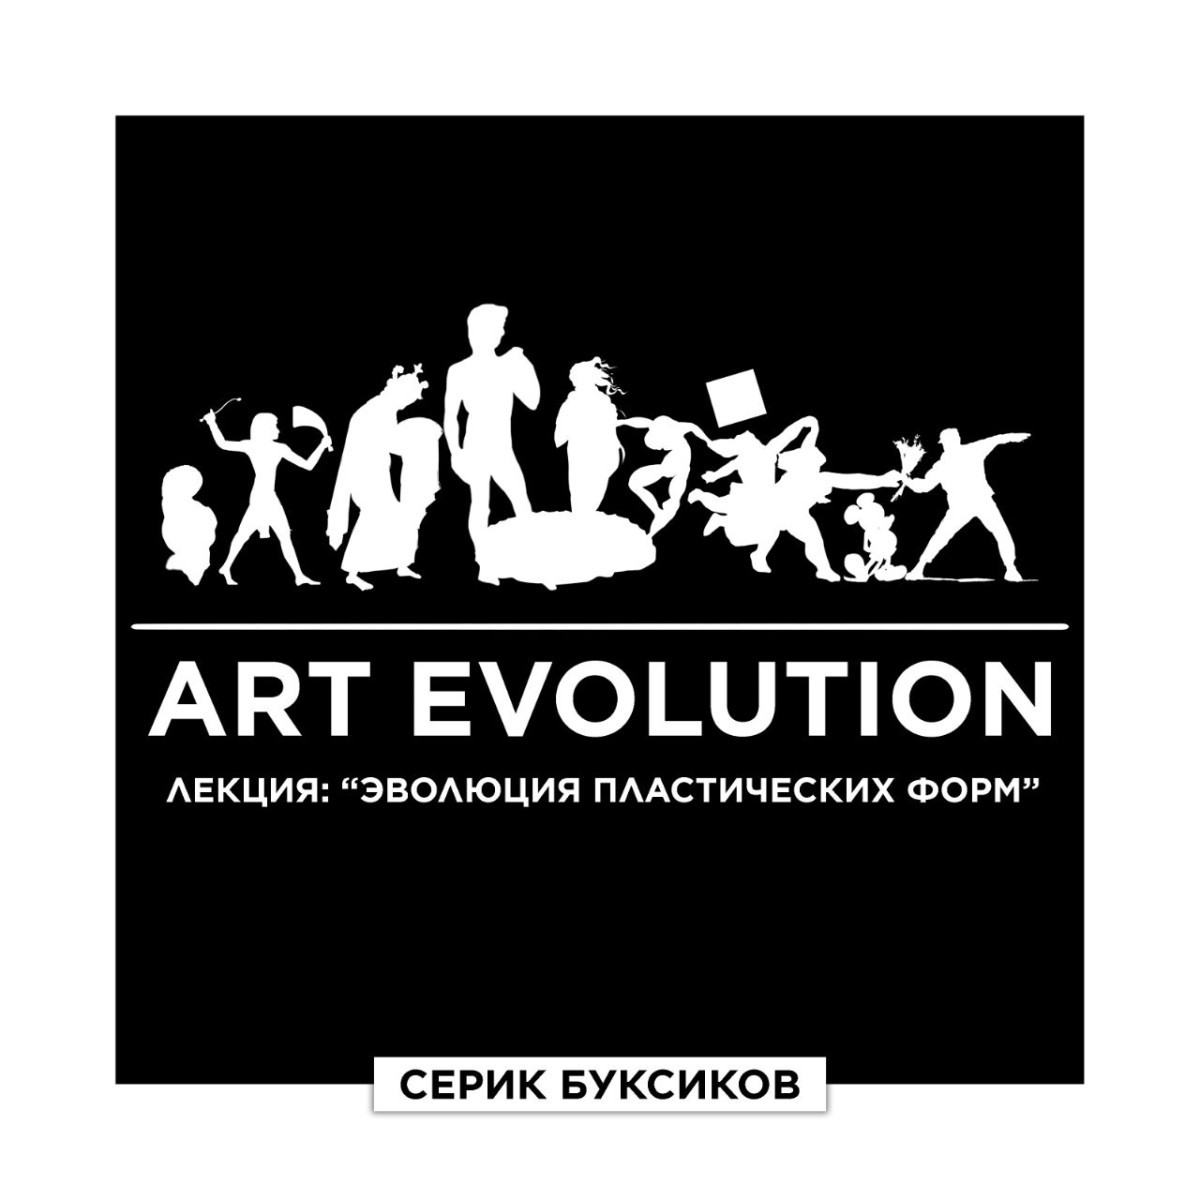 Художник Серик Буксиков расскажет об арт-эволюции в Казахстане